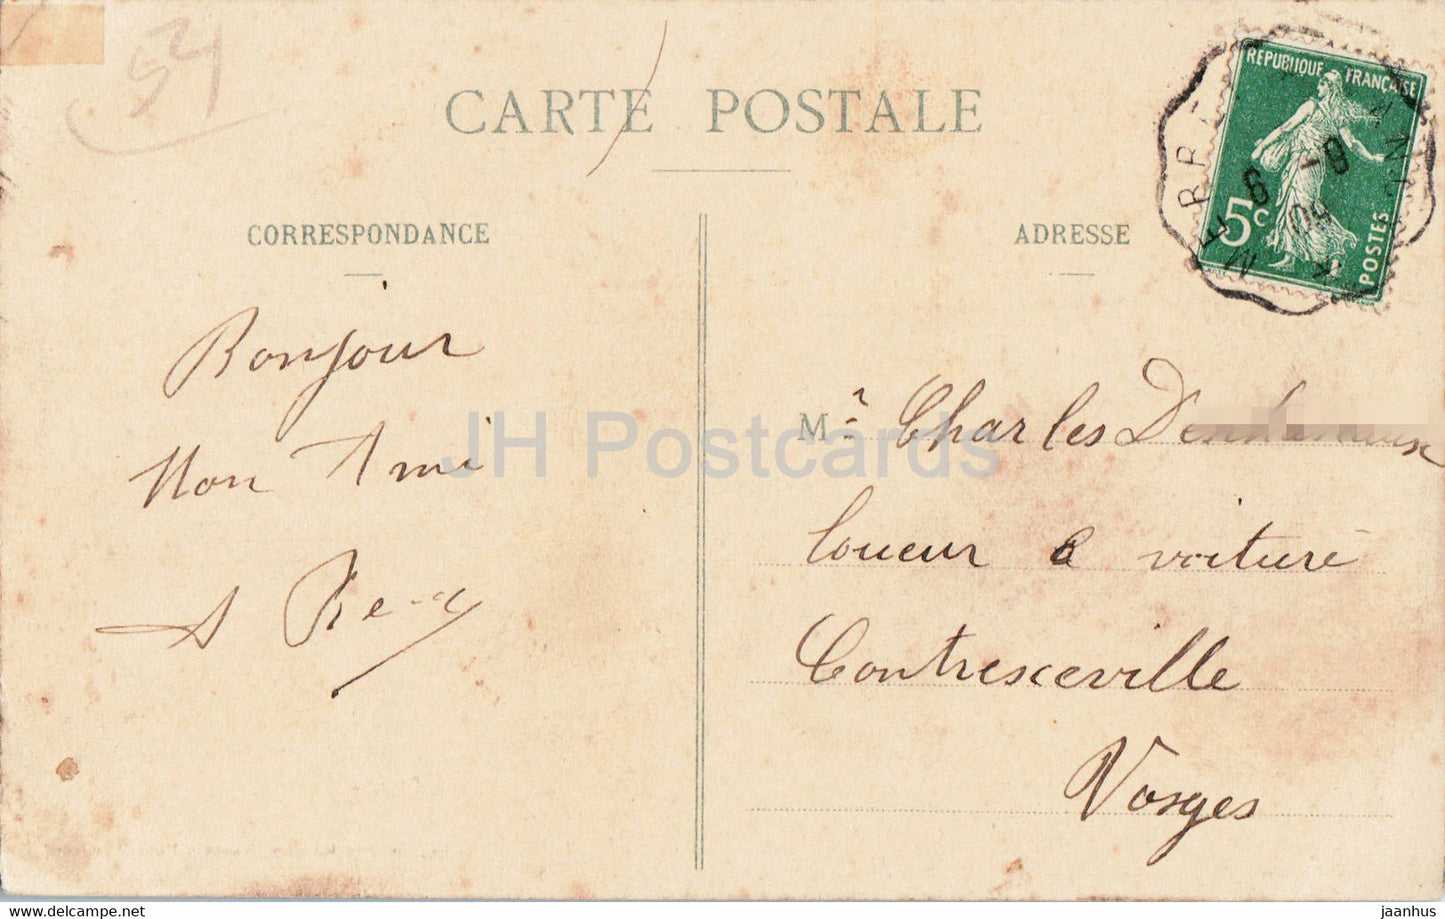 Exposition de Nancy - Le Palais de l'Electricite - 6 - old postcard - 1909 - France - used